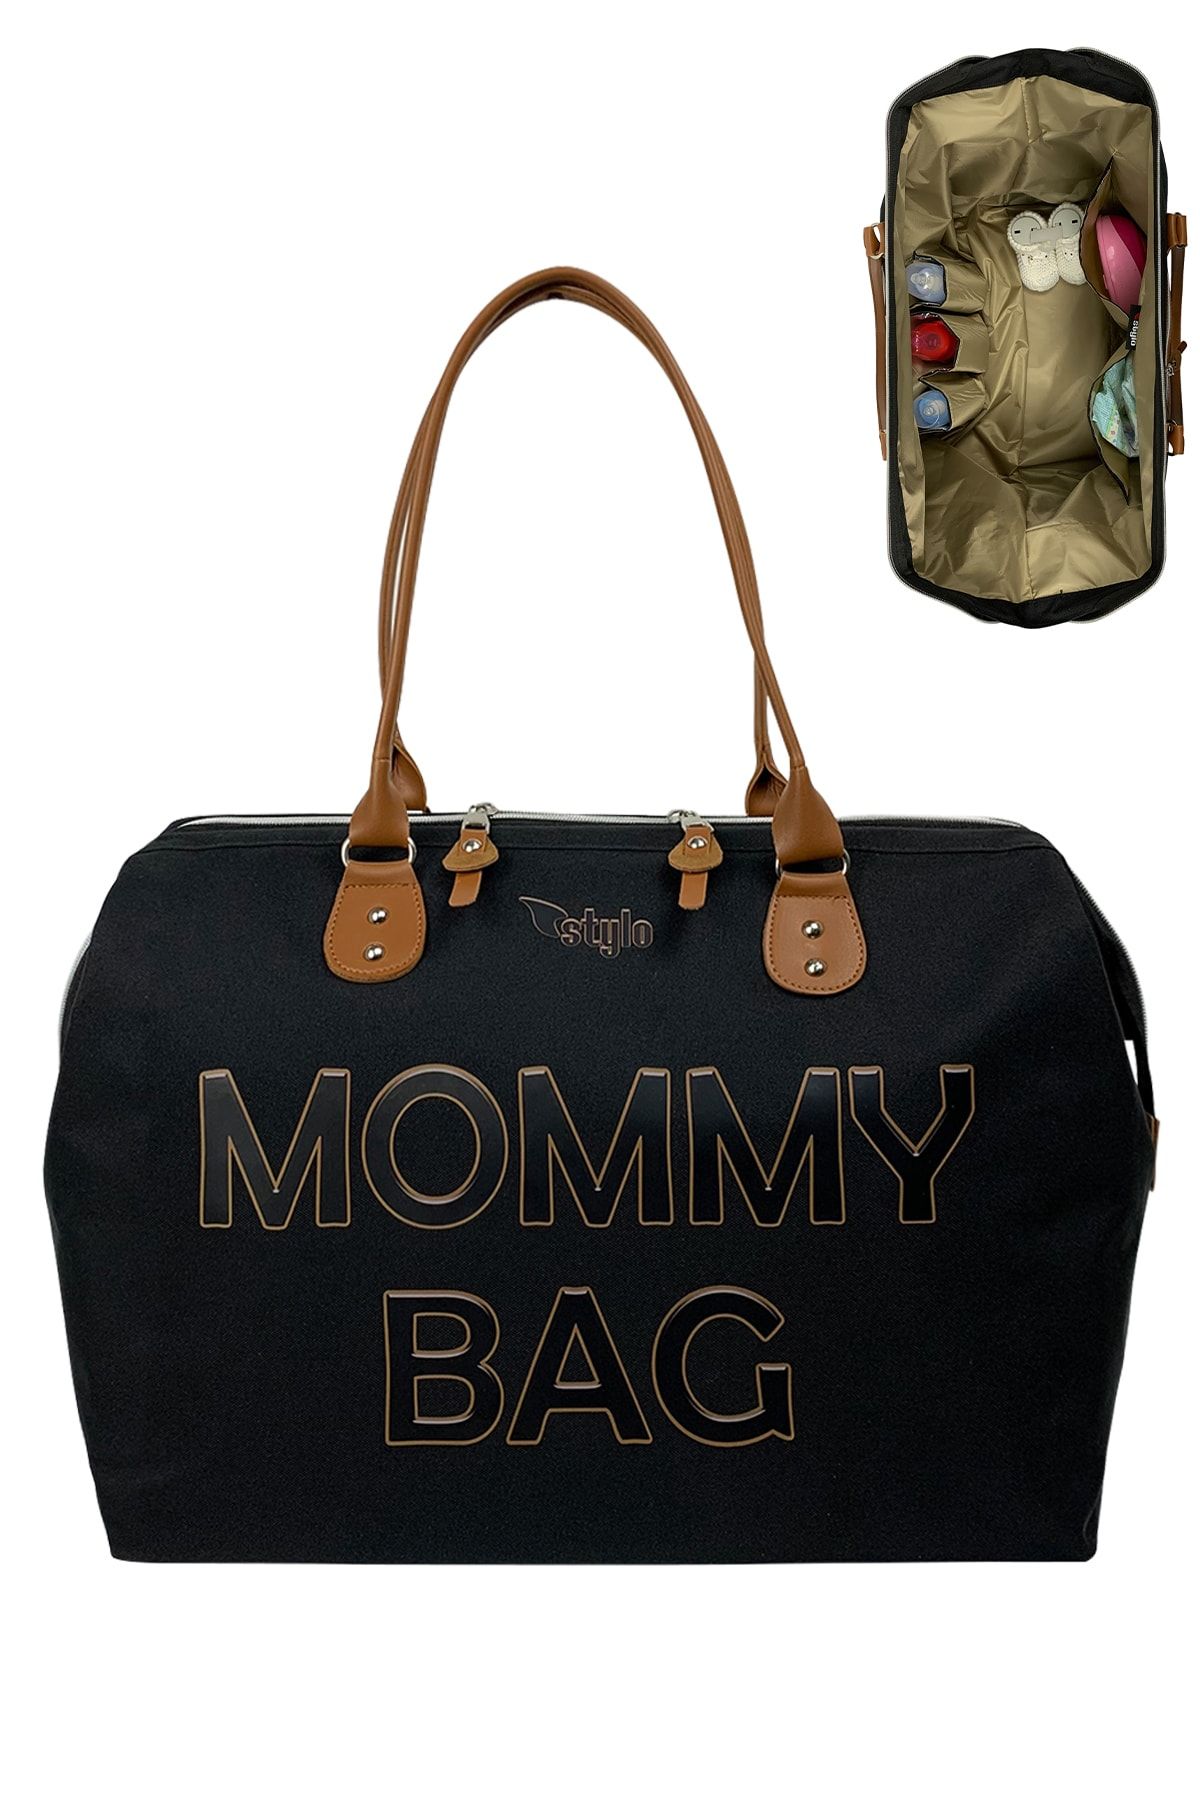 Stylo Mommy Bag 3d Anne Bebek Bakım Çantası - Siyah